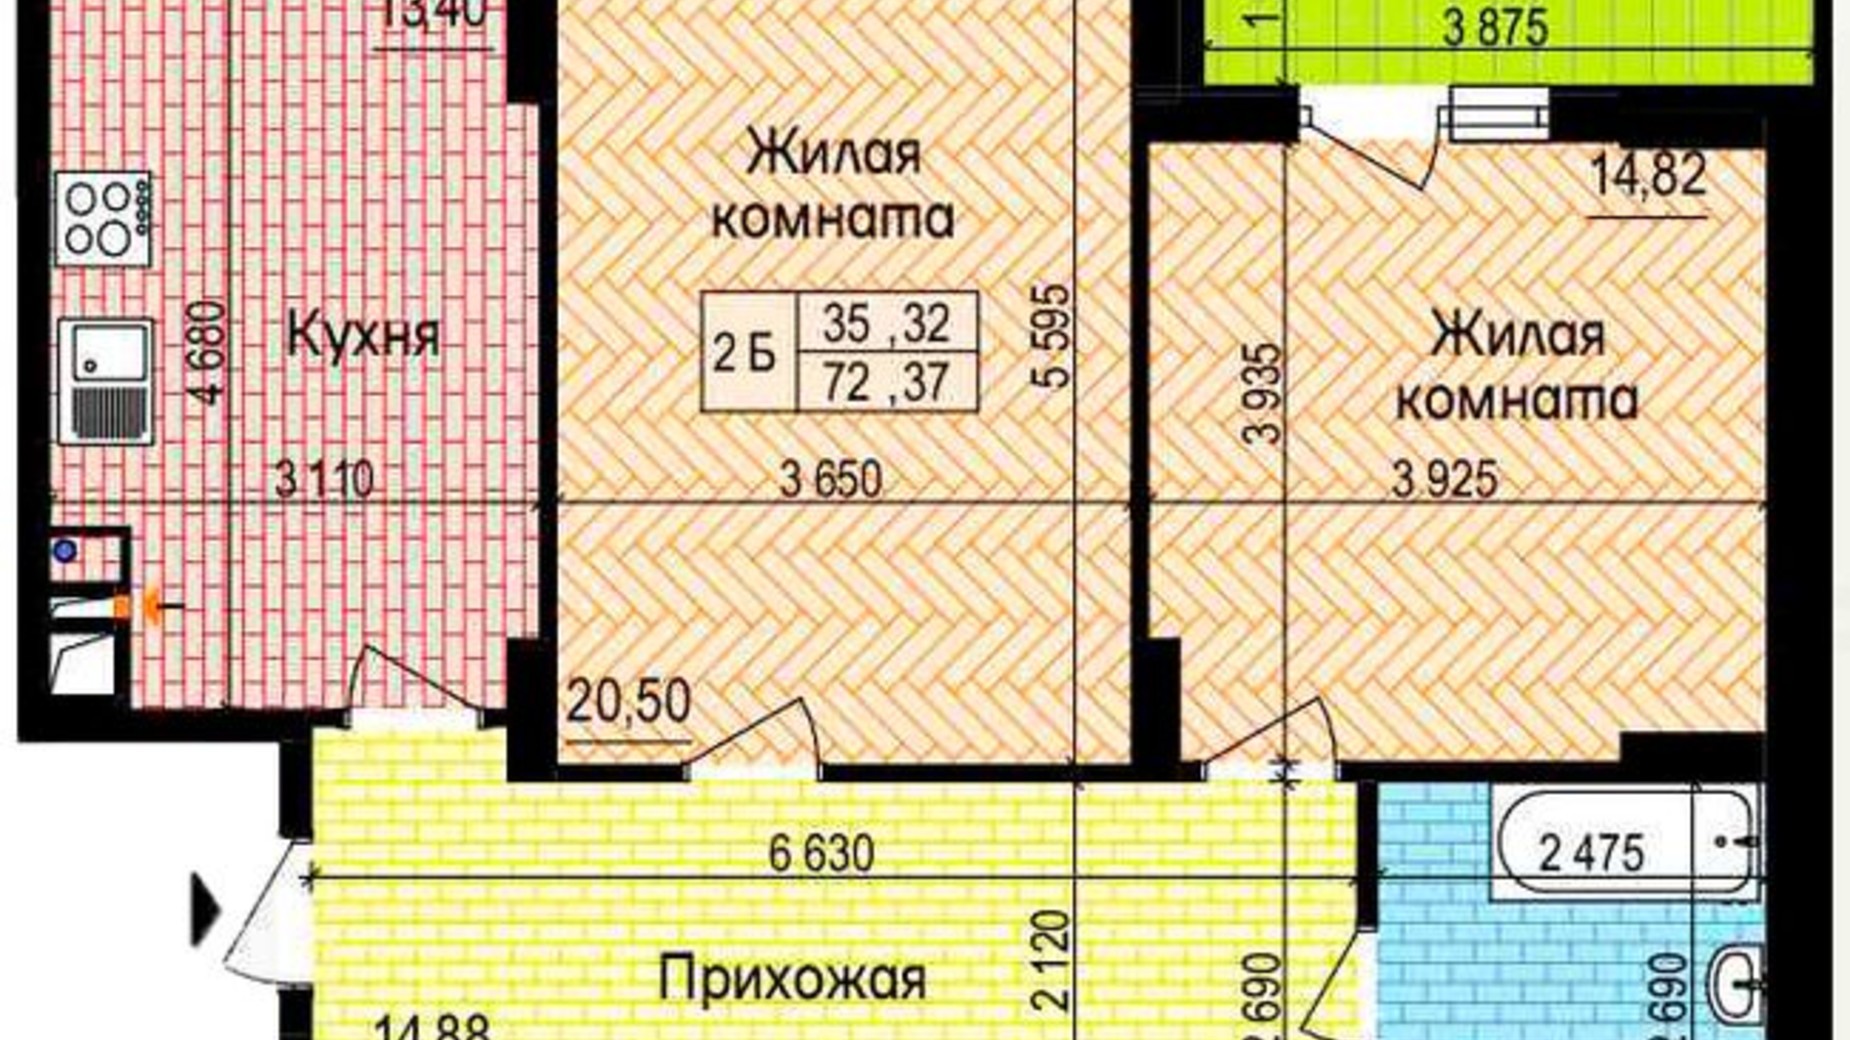 Планировка 2-комнатной квартиры в ЖК Пролисок 72.37 м², фото 341132